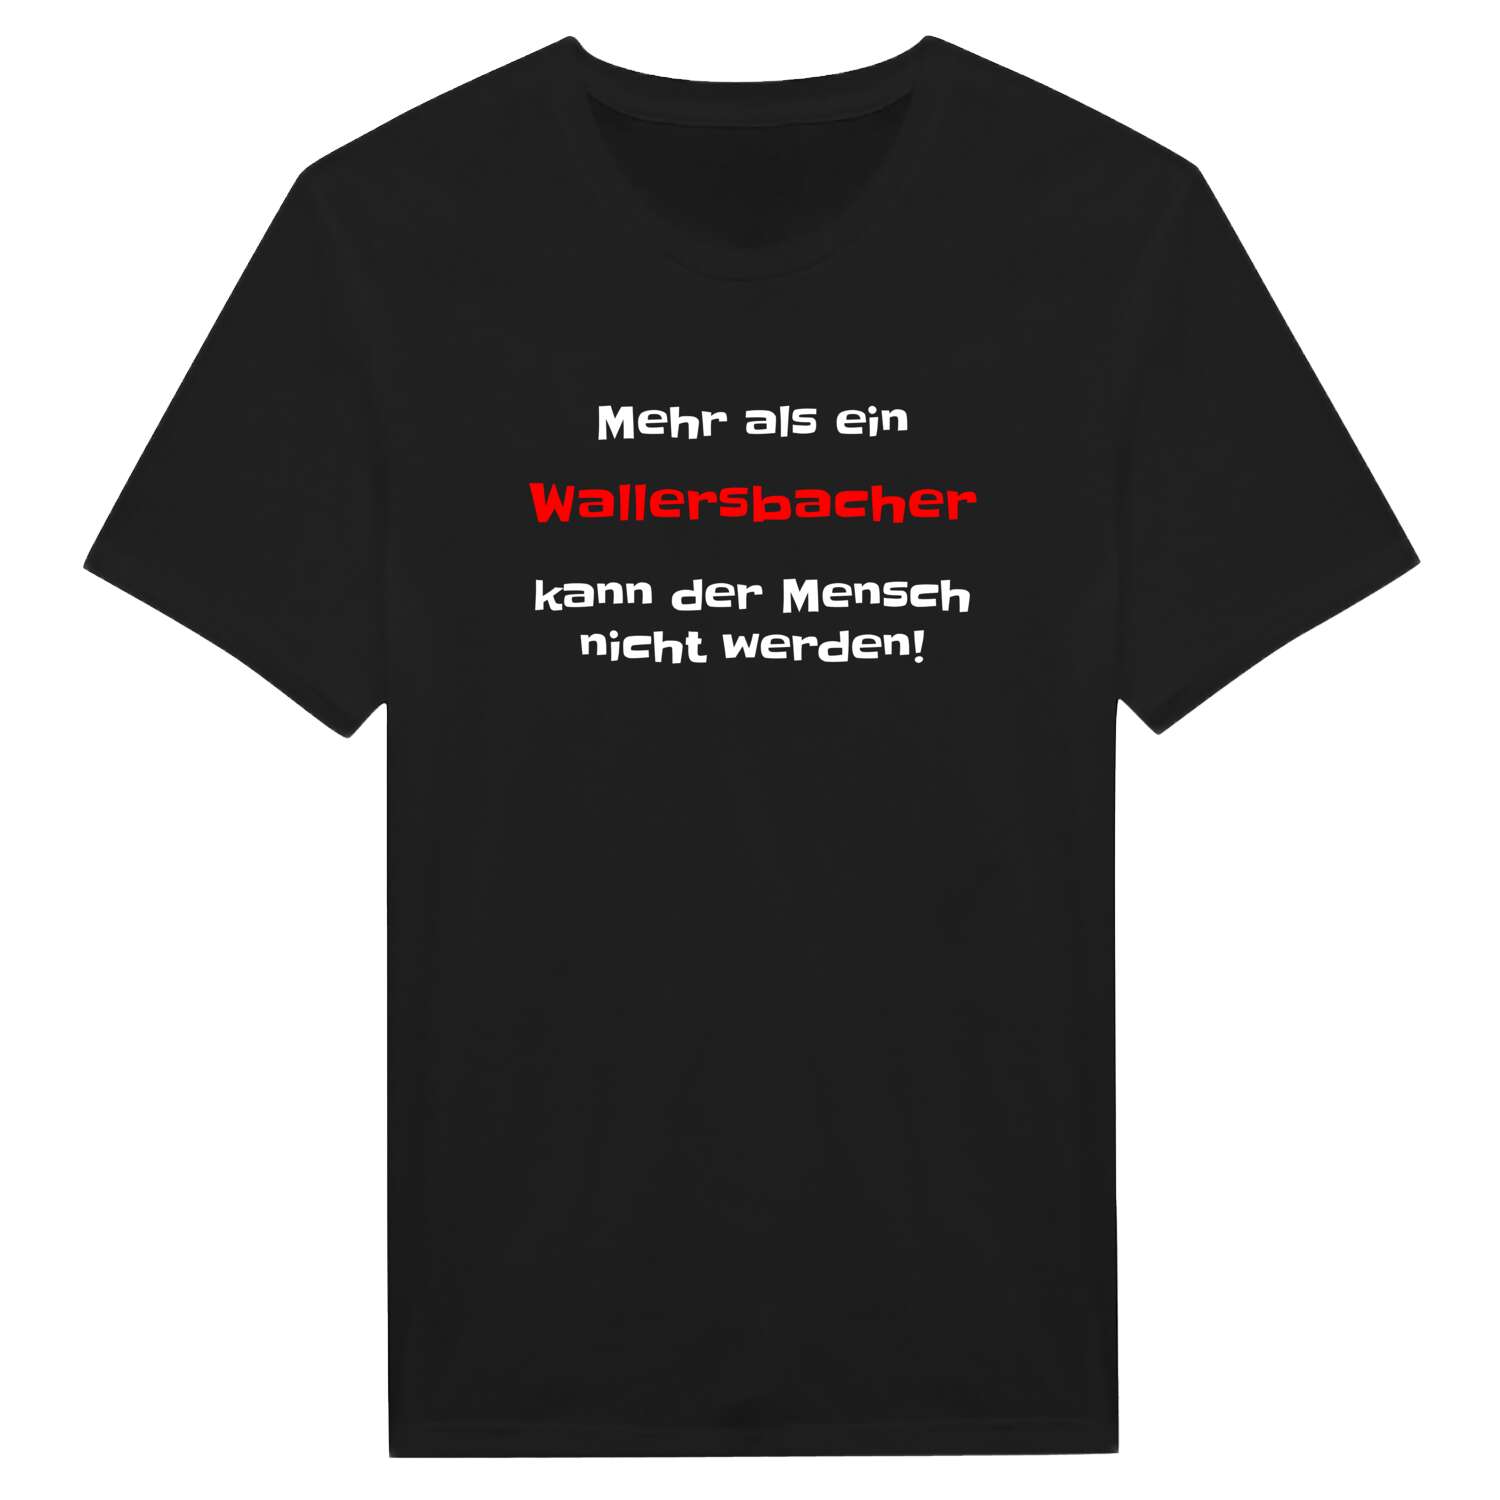 Wallersbach T-Shirt »Mehr als ein«